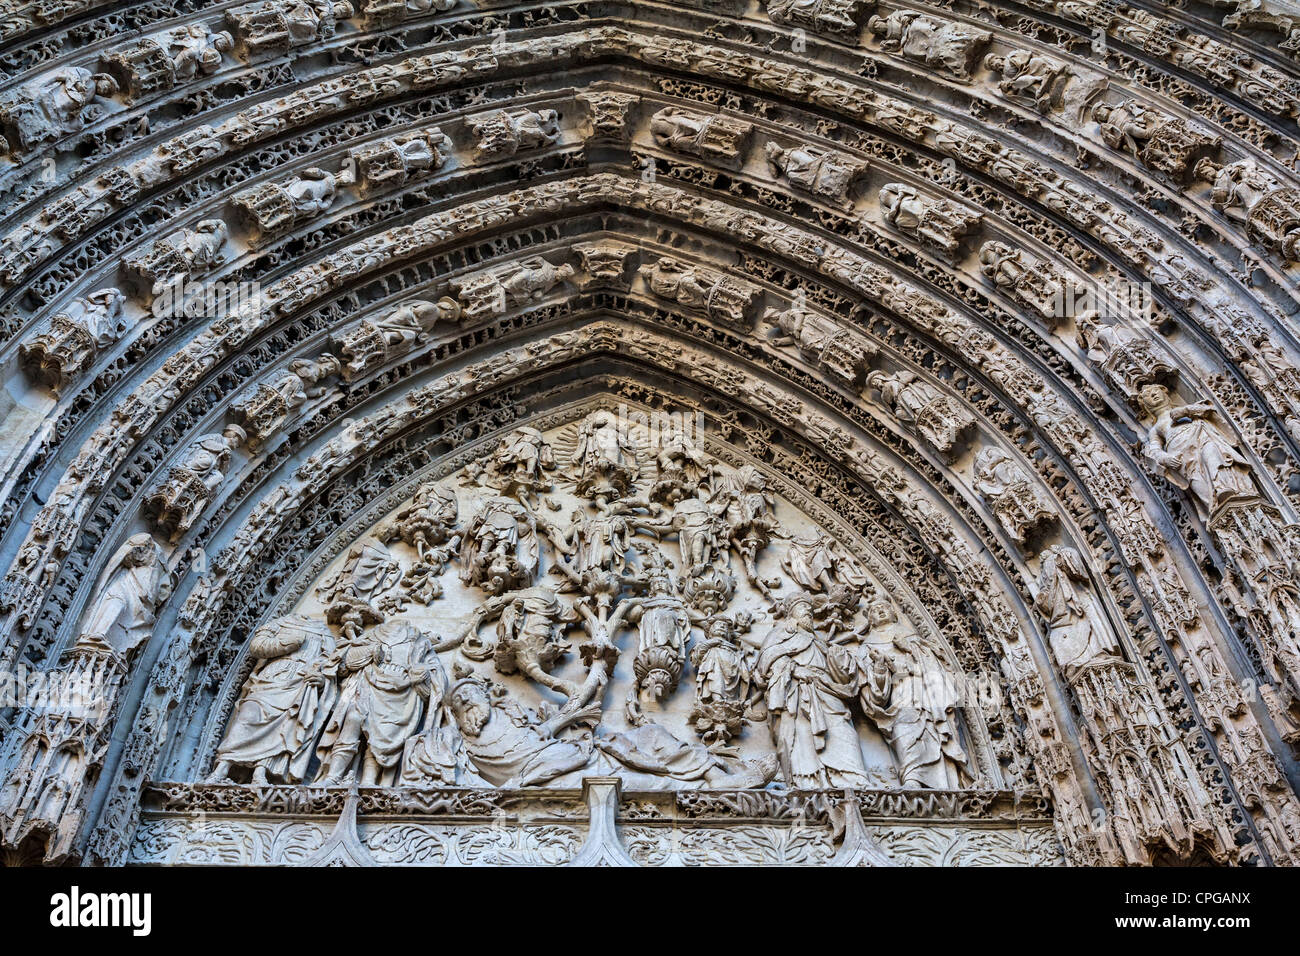 Socorro de la escultura en el exterior de la Catedral de Rouen, Francia Foto de stock